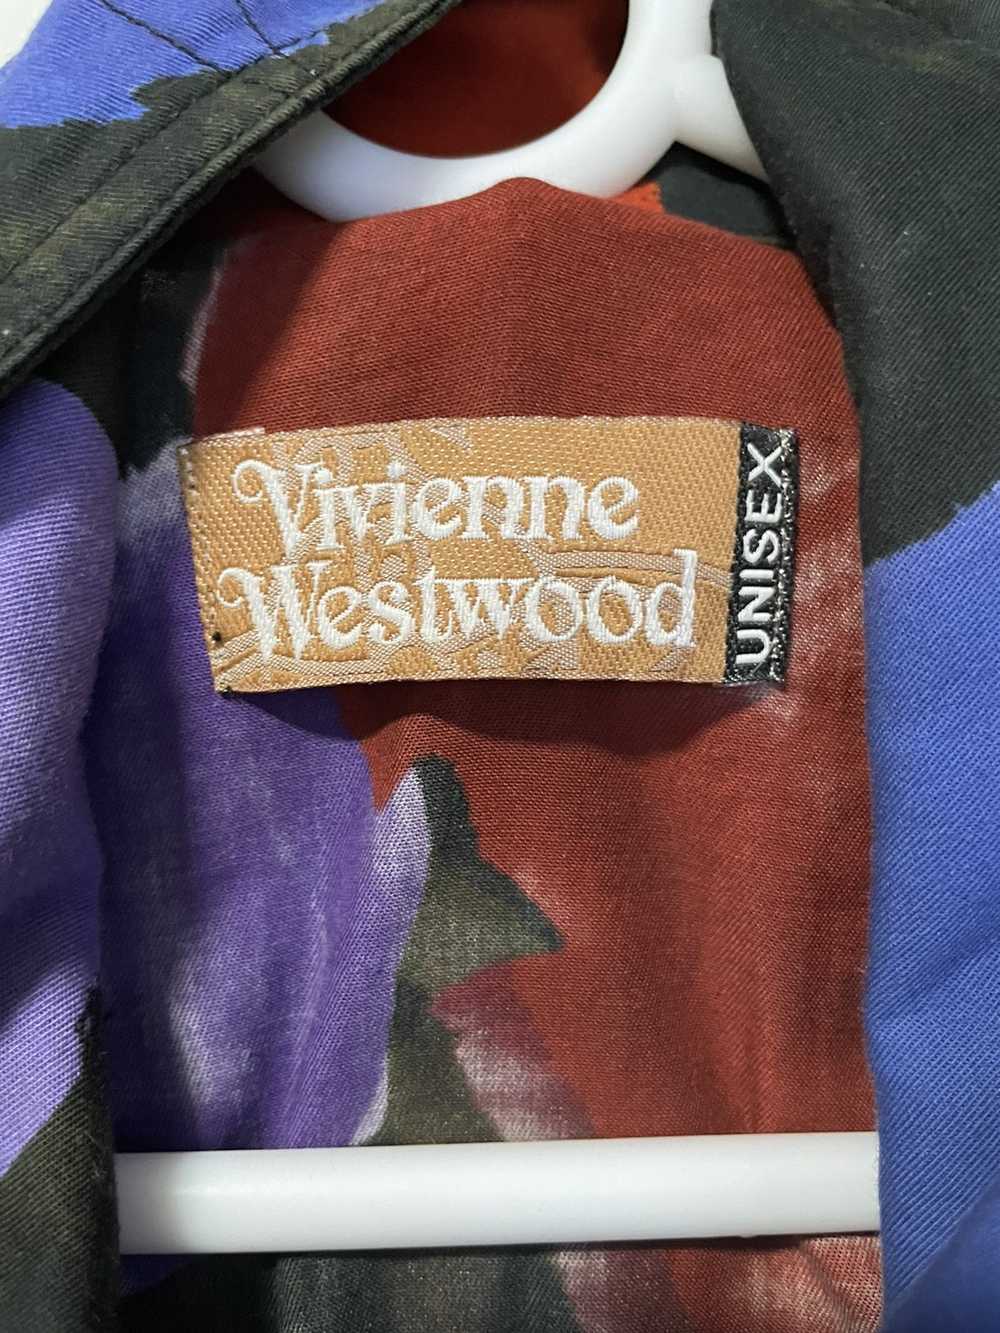 Vivienne Westwood Limited Midas King Jumpsuit - image 10